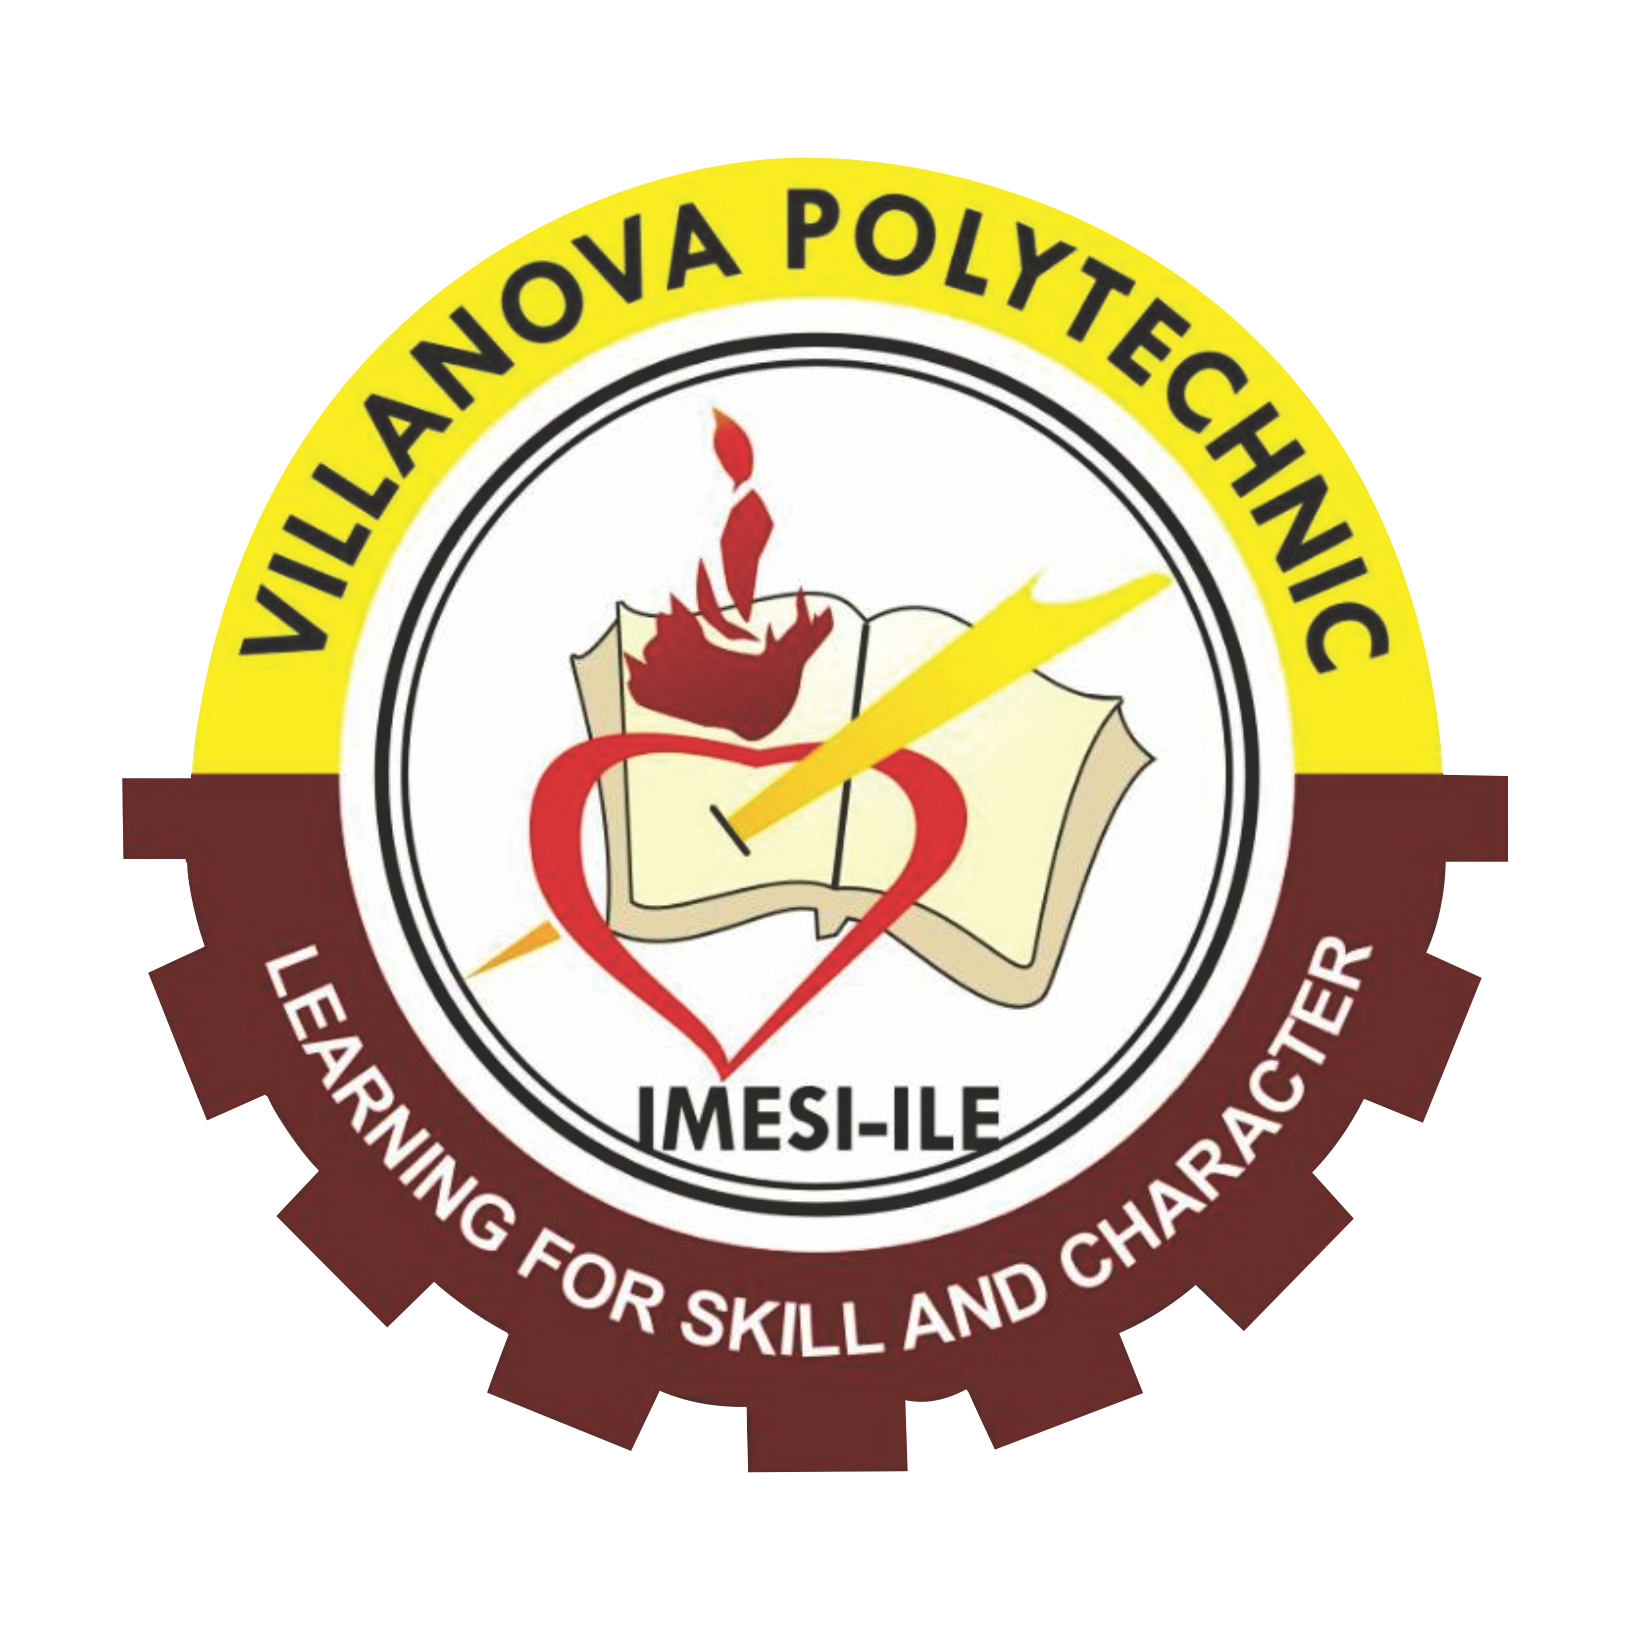 Villanova Polytechnic Imesi-Ile